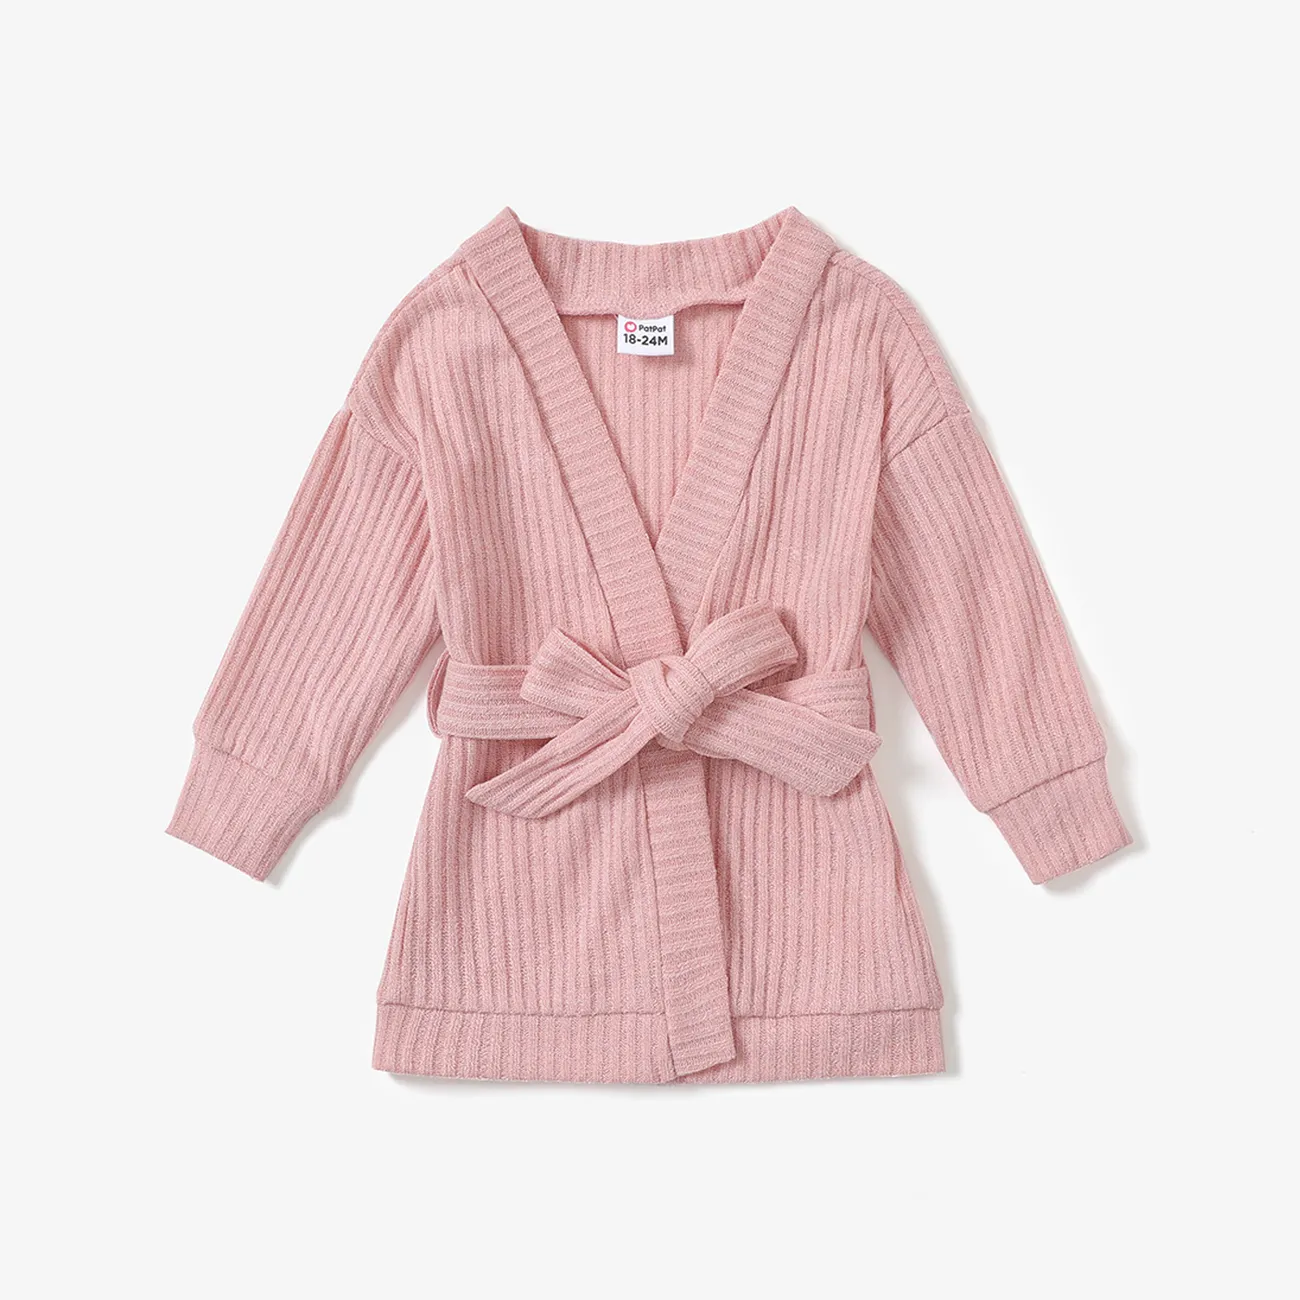 Toddler Girl Solid Color Ribbed Belted Open Front Cardigan Jacket Pink big image 1